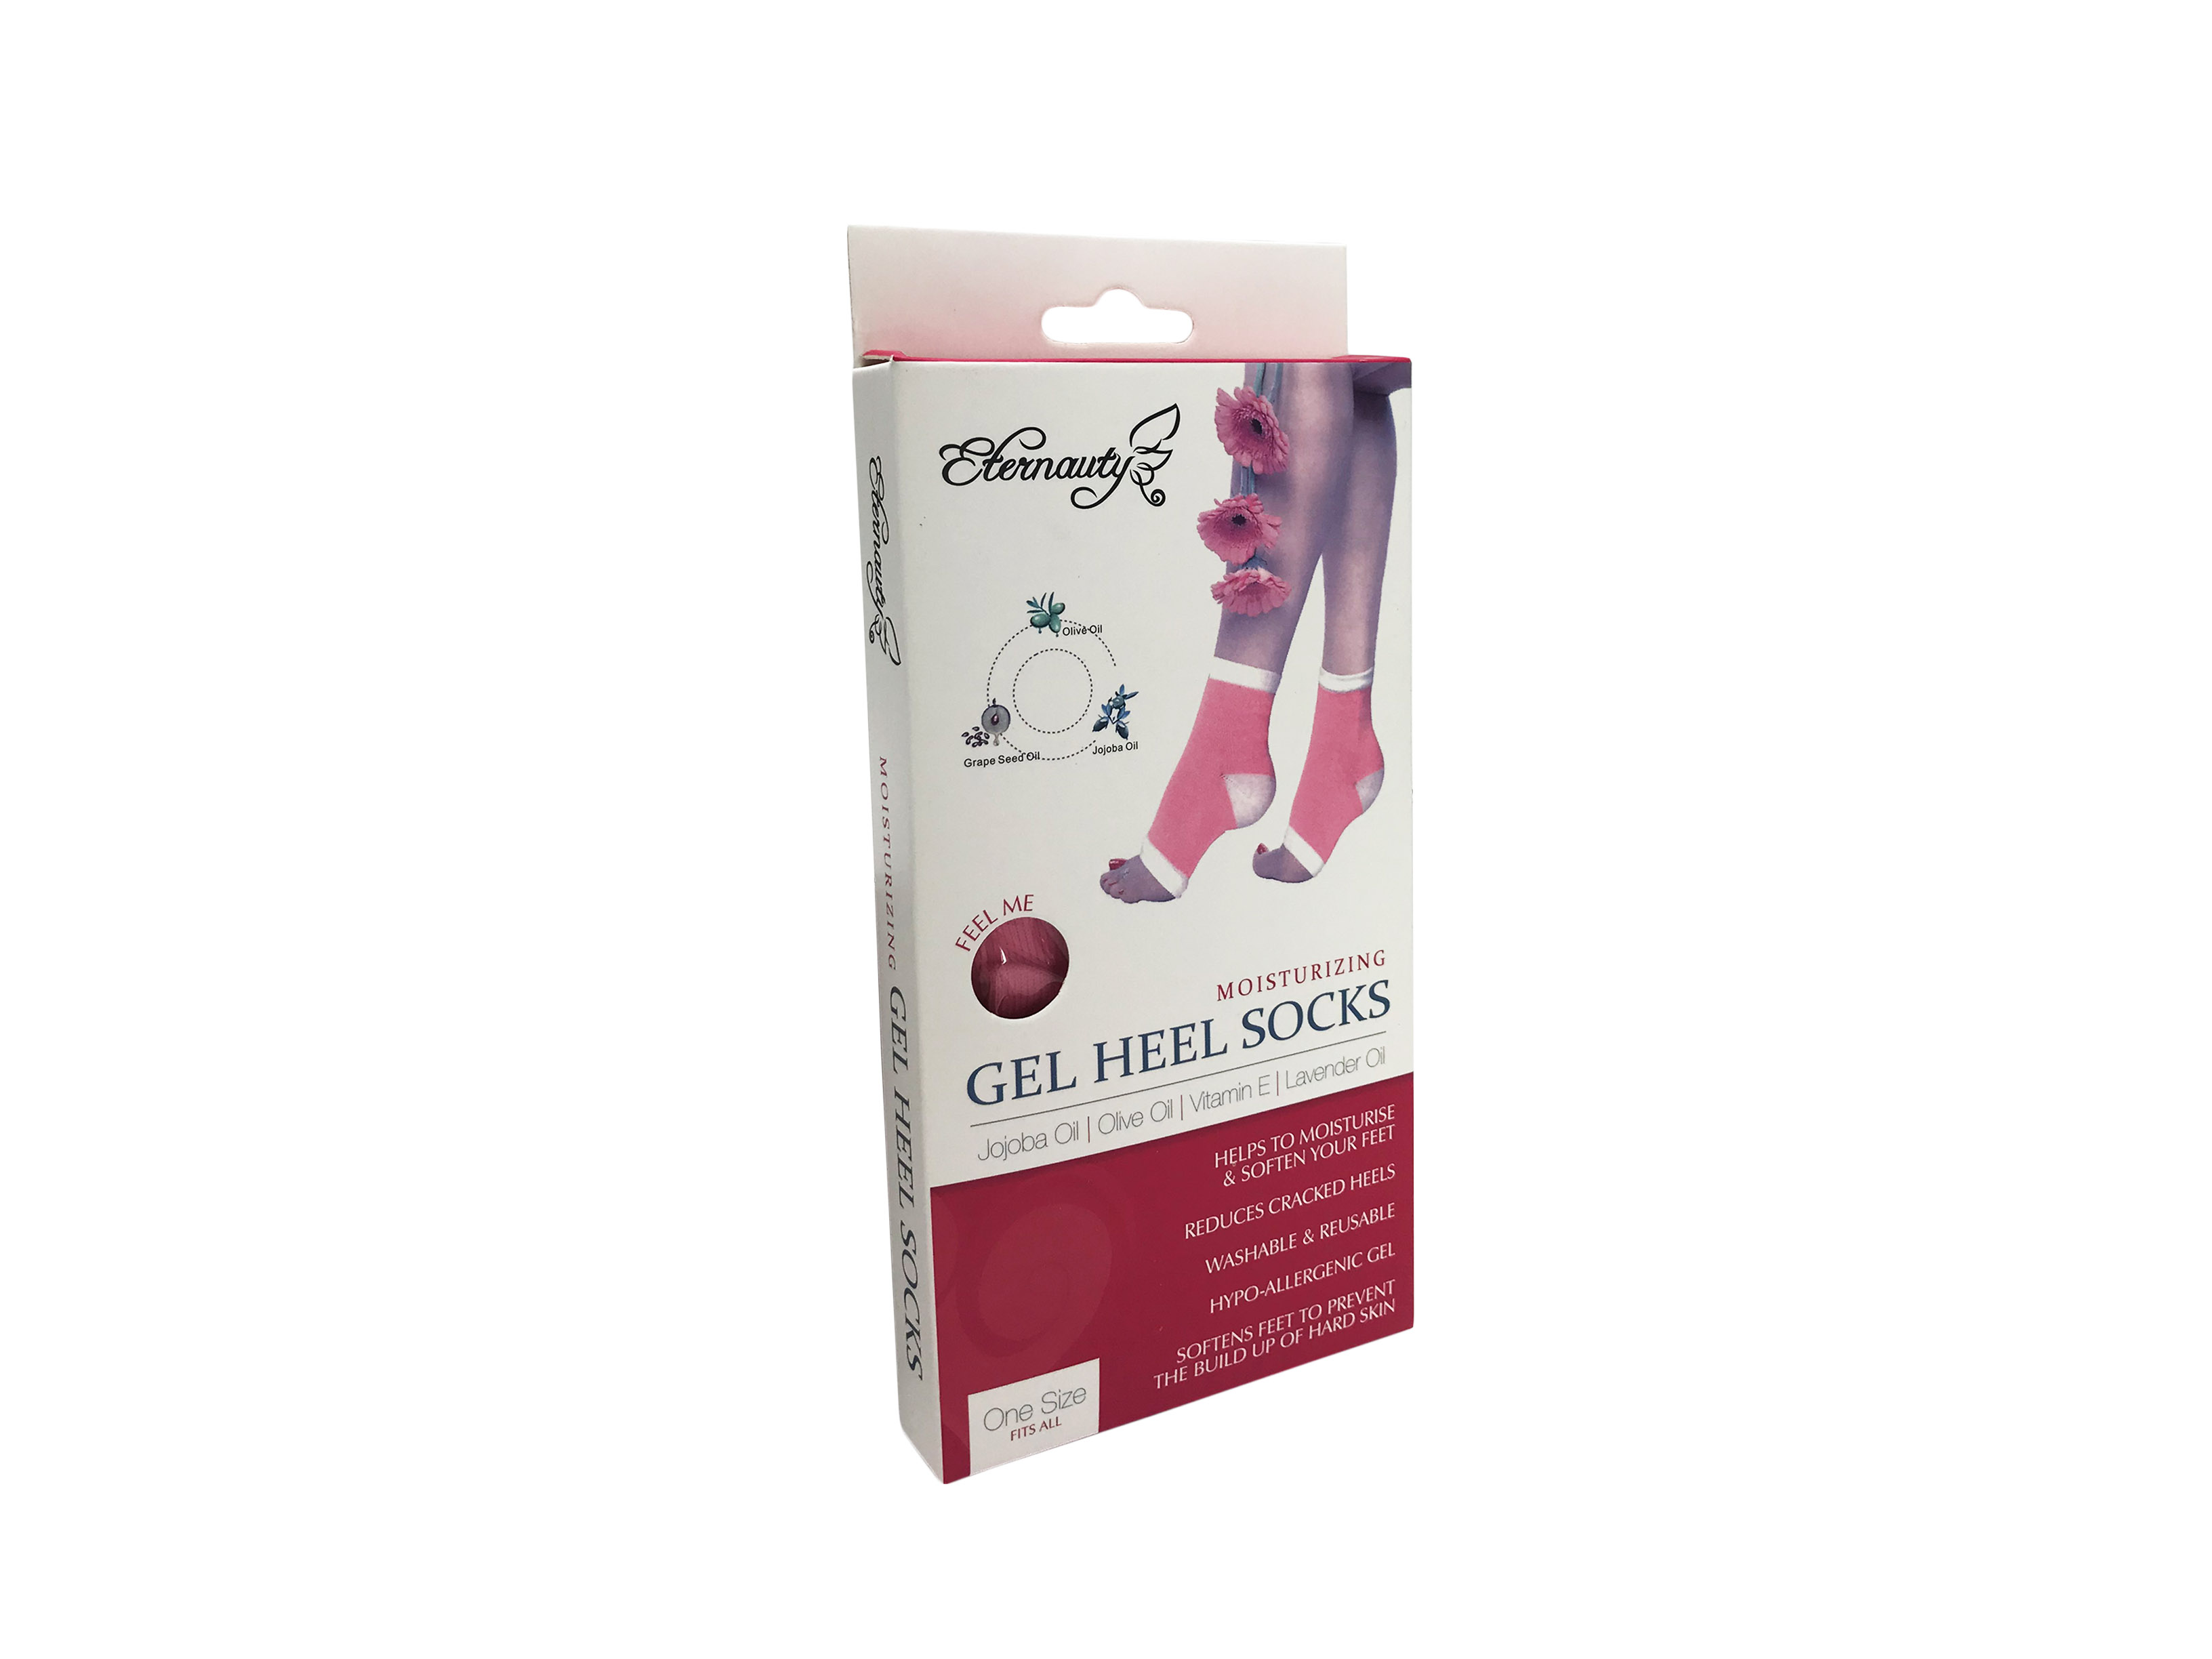 Увлажняющие гелевые носки Eternauty Gel Heel Socks оптом